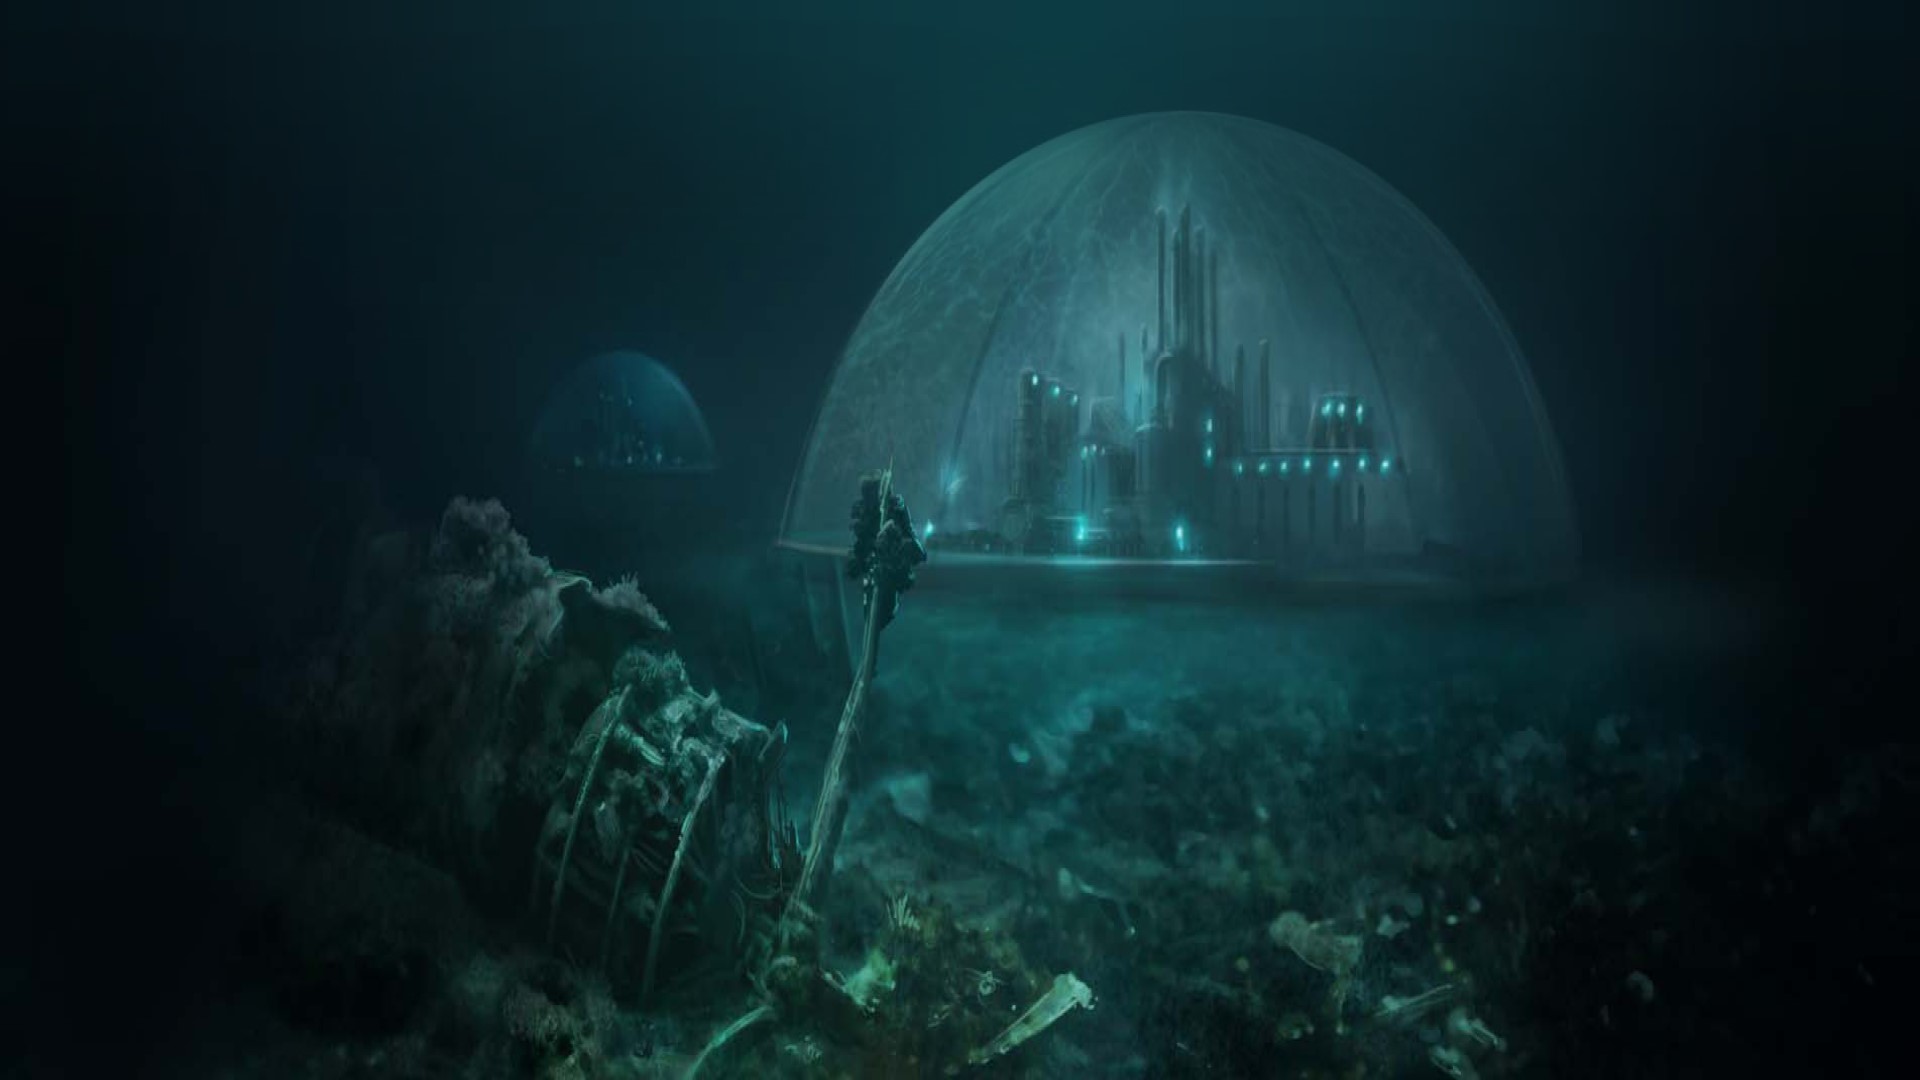 משחקי האסטרטגיה הניידים הטובים ביותר: suberfuge. תמונה מציגה עיר בכיפה מתחת לים